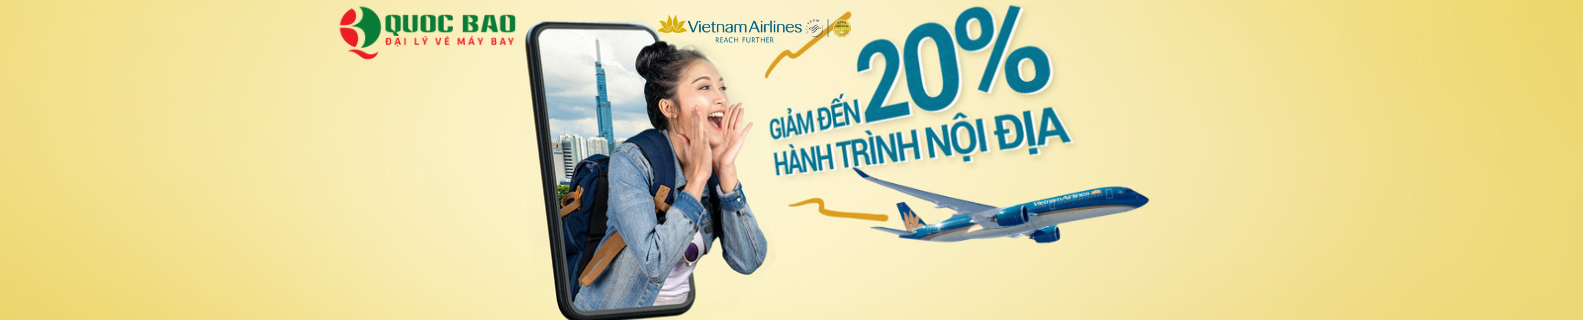 Vé máy bay Sài Gòn (TP.HCM) đi Hà Nội